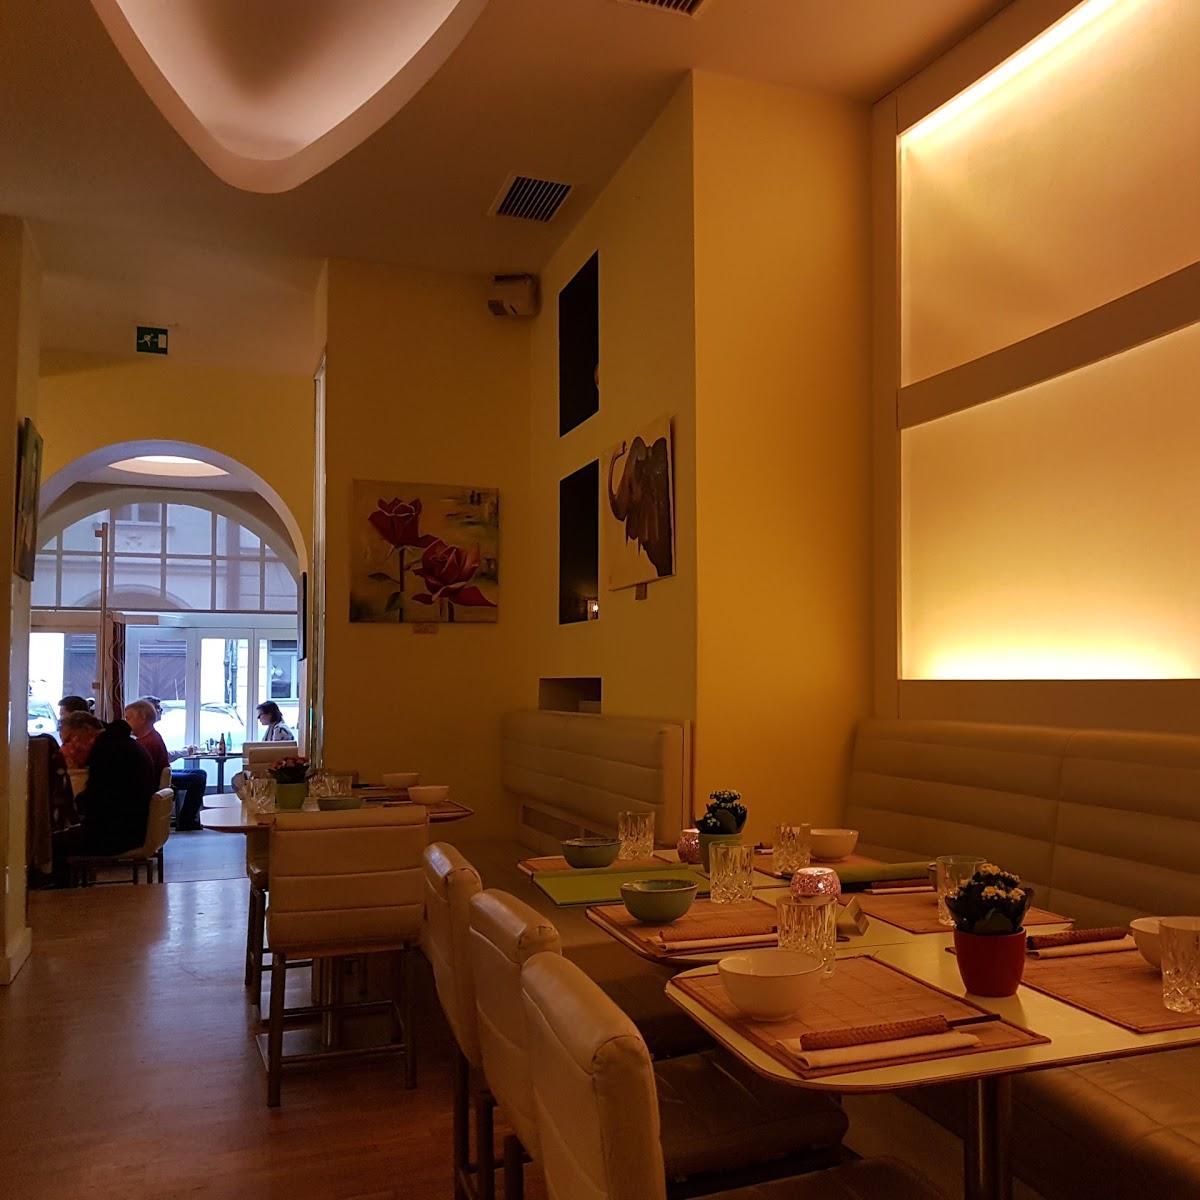 Restaurant "Monsoon Glockenbach" in München